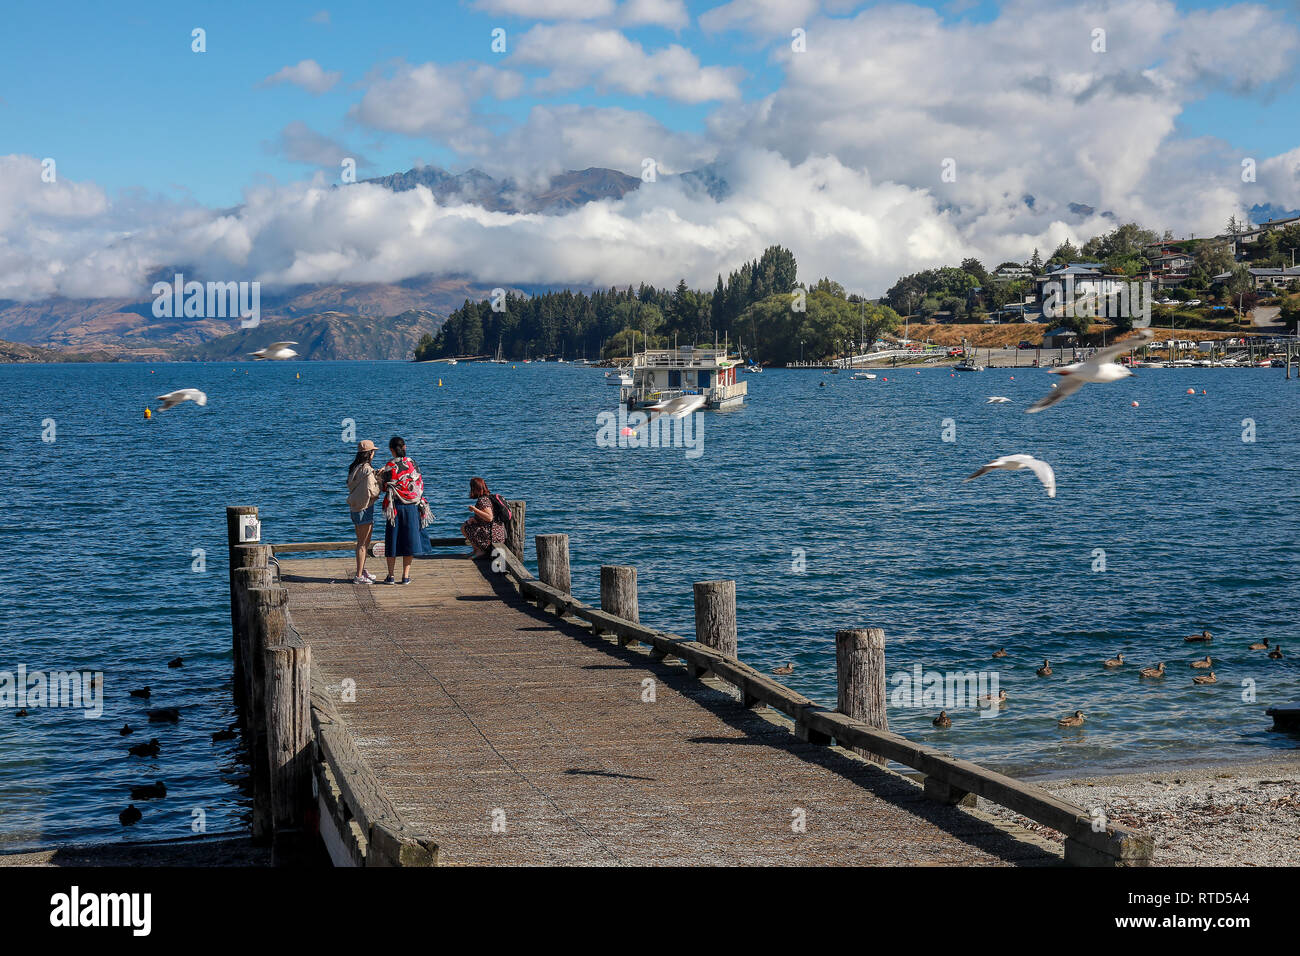 Les touristes asiatiques et occidentaux et des habitants de nourrir les oiseaux sur la plage de galets et de la jetée sur la journée d'été au soleil Lac Wanaka Nouvelle-zélande Île du Sud Banque D'Images